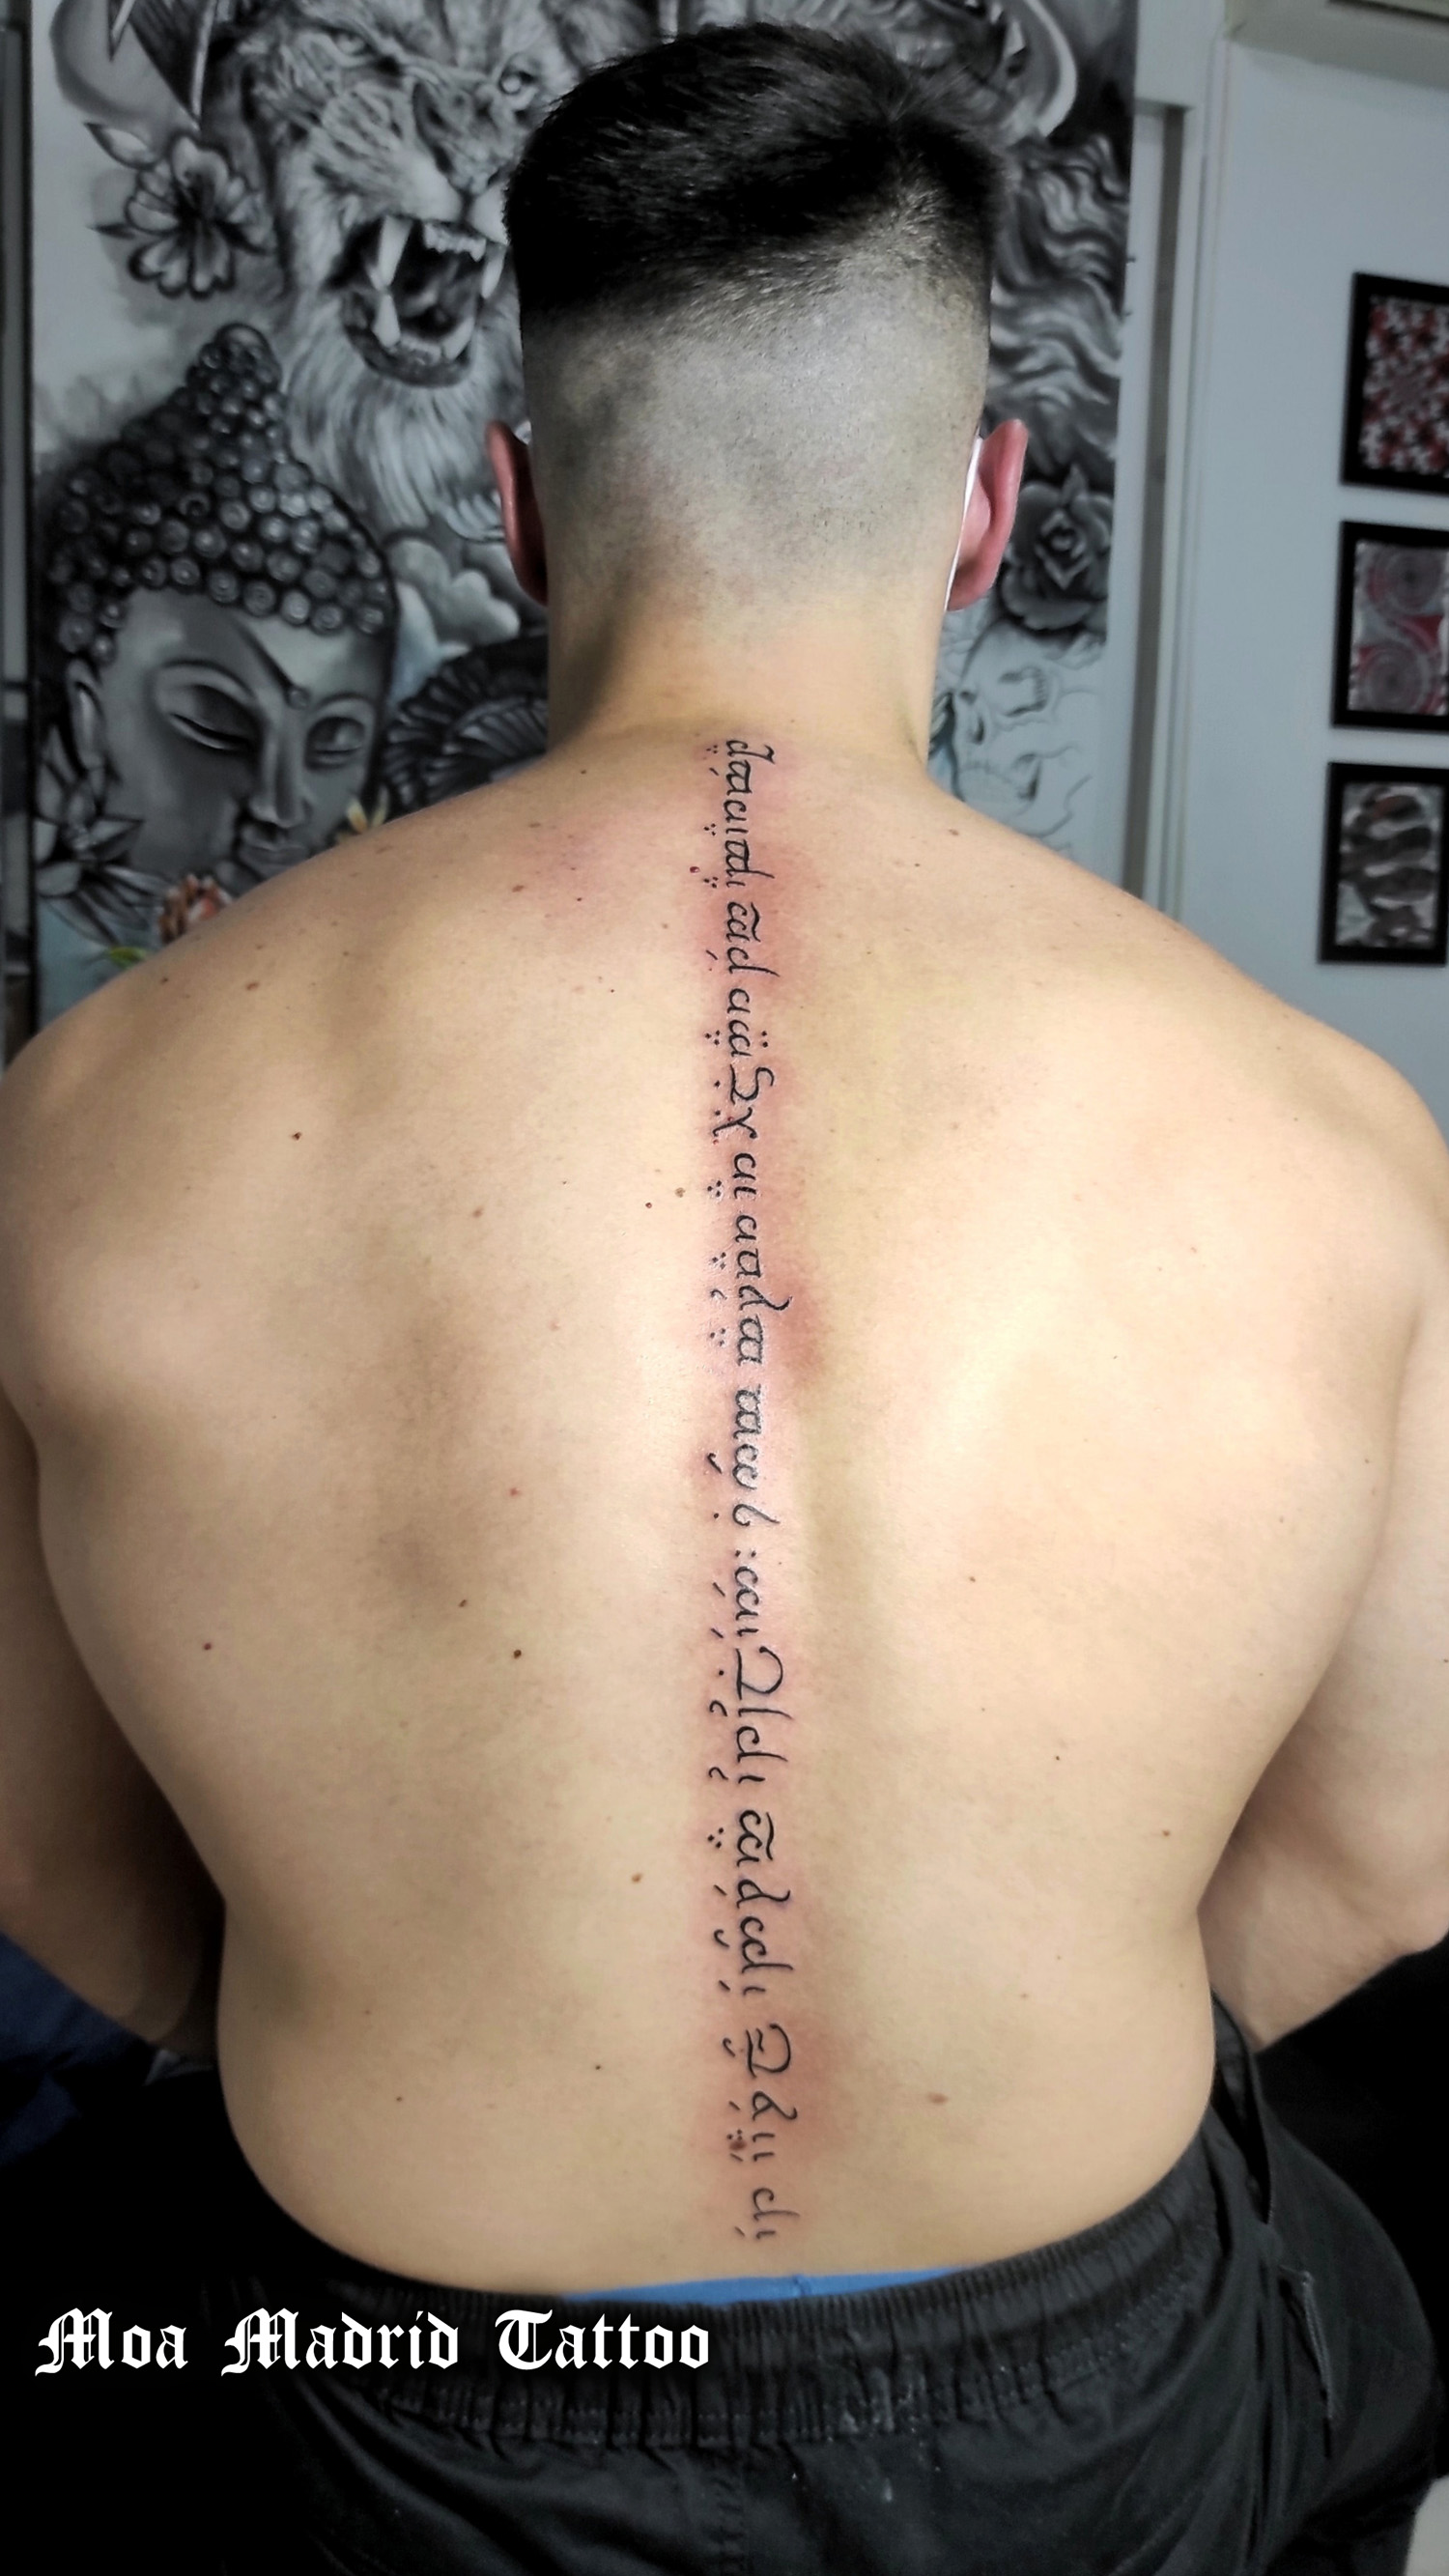 Tatuaje con texto escrito en élfico en espalda de hombre